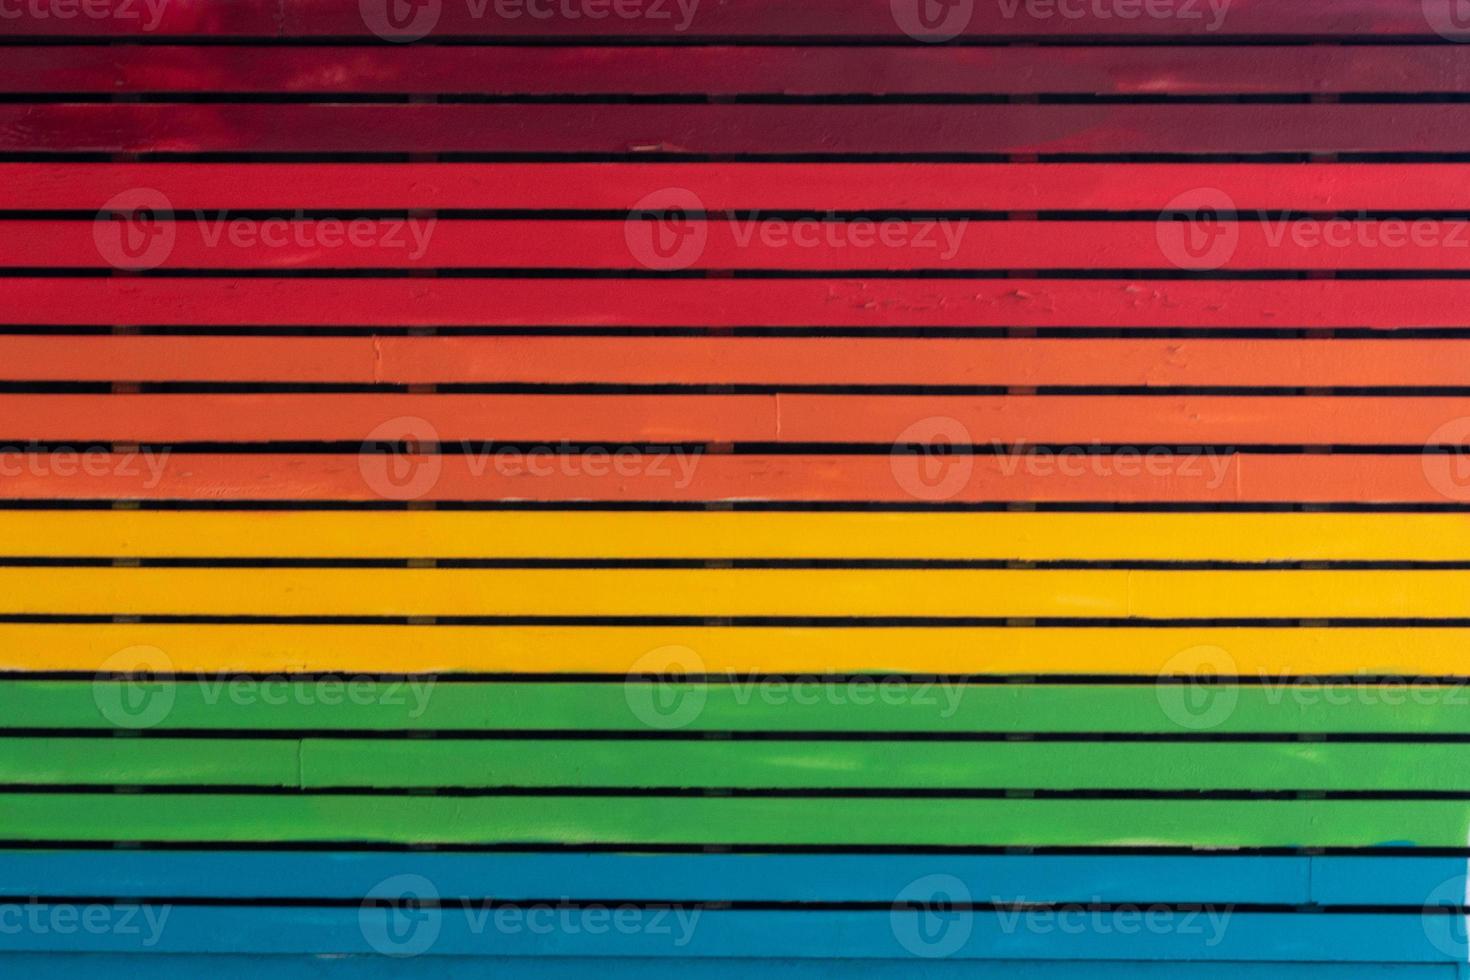 paix arc-en-ciel couleurs escalier photo